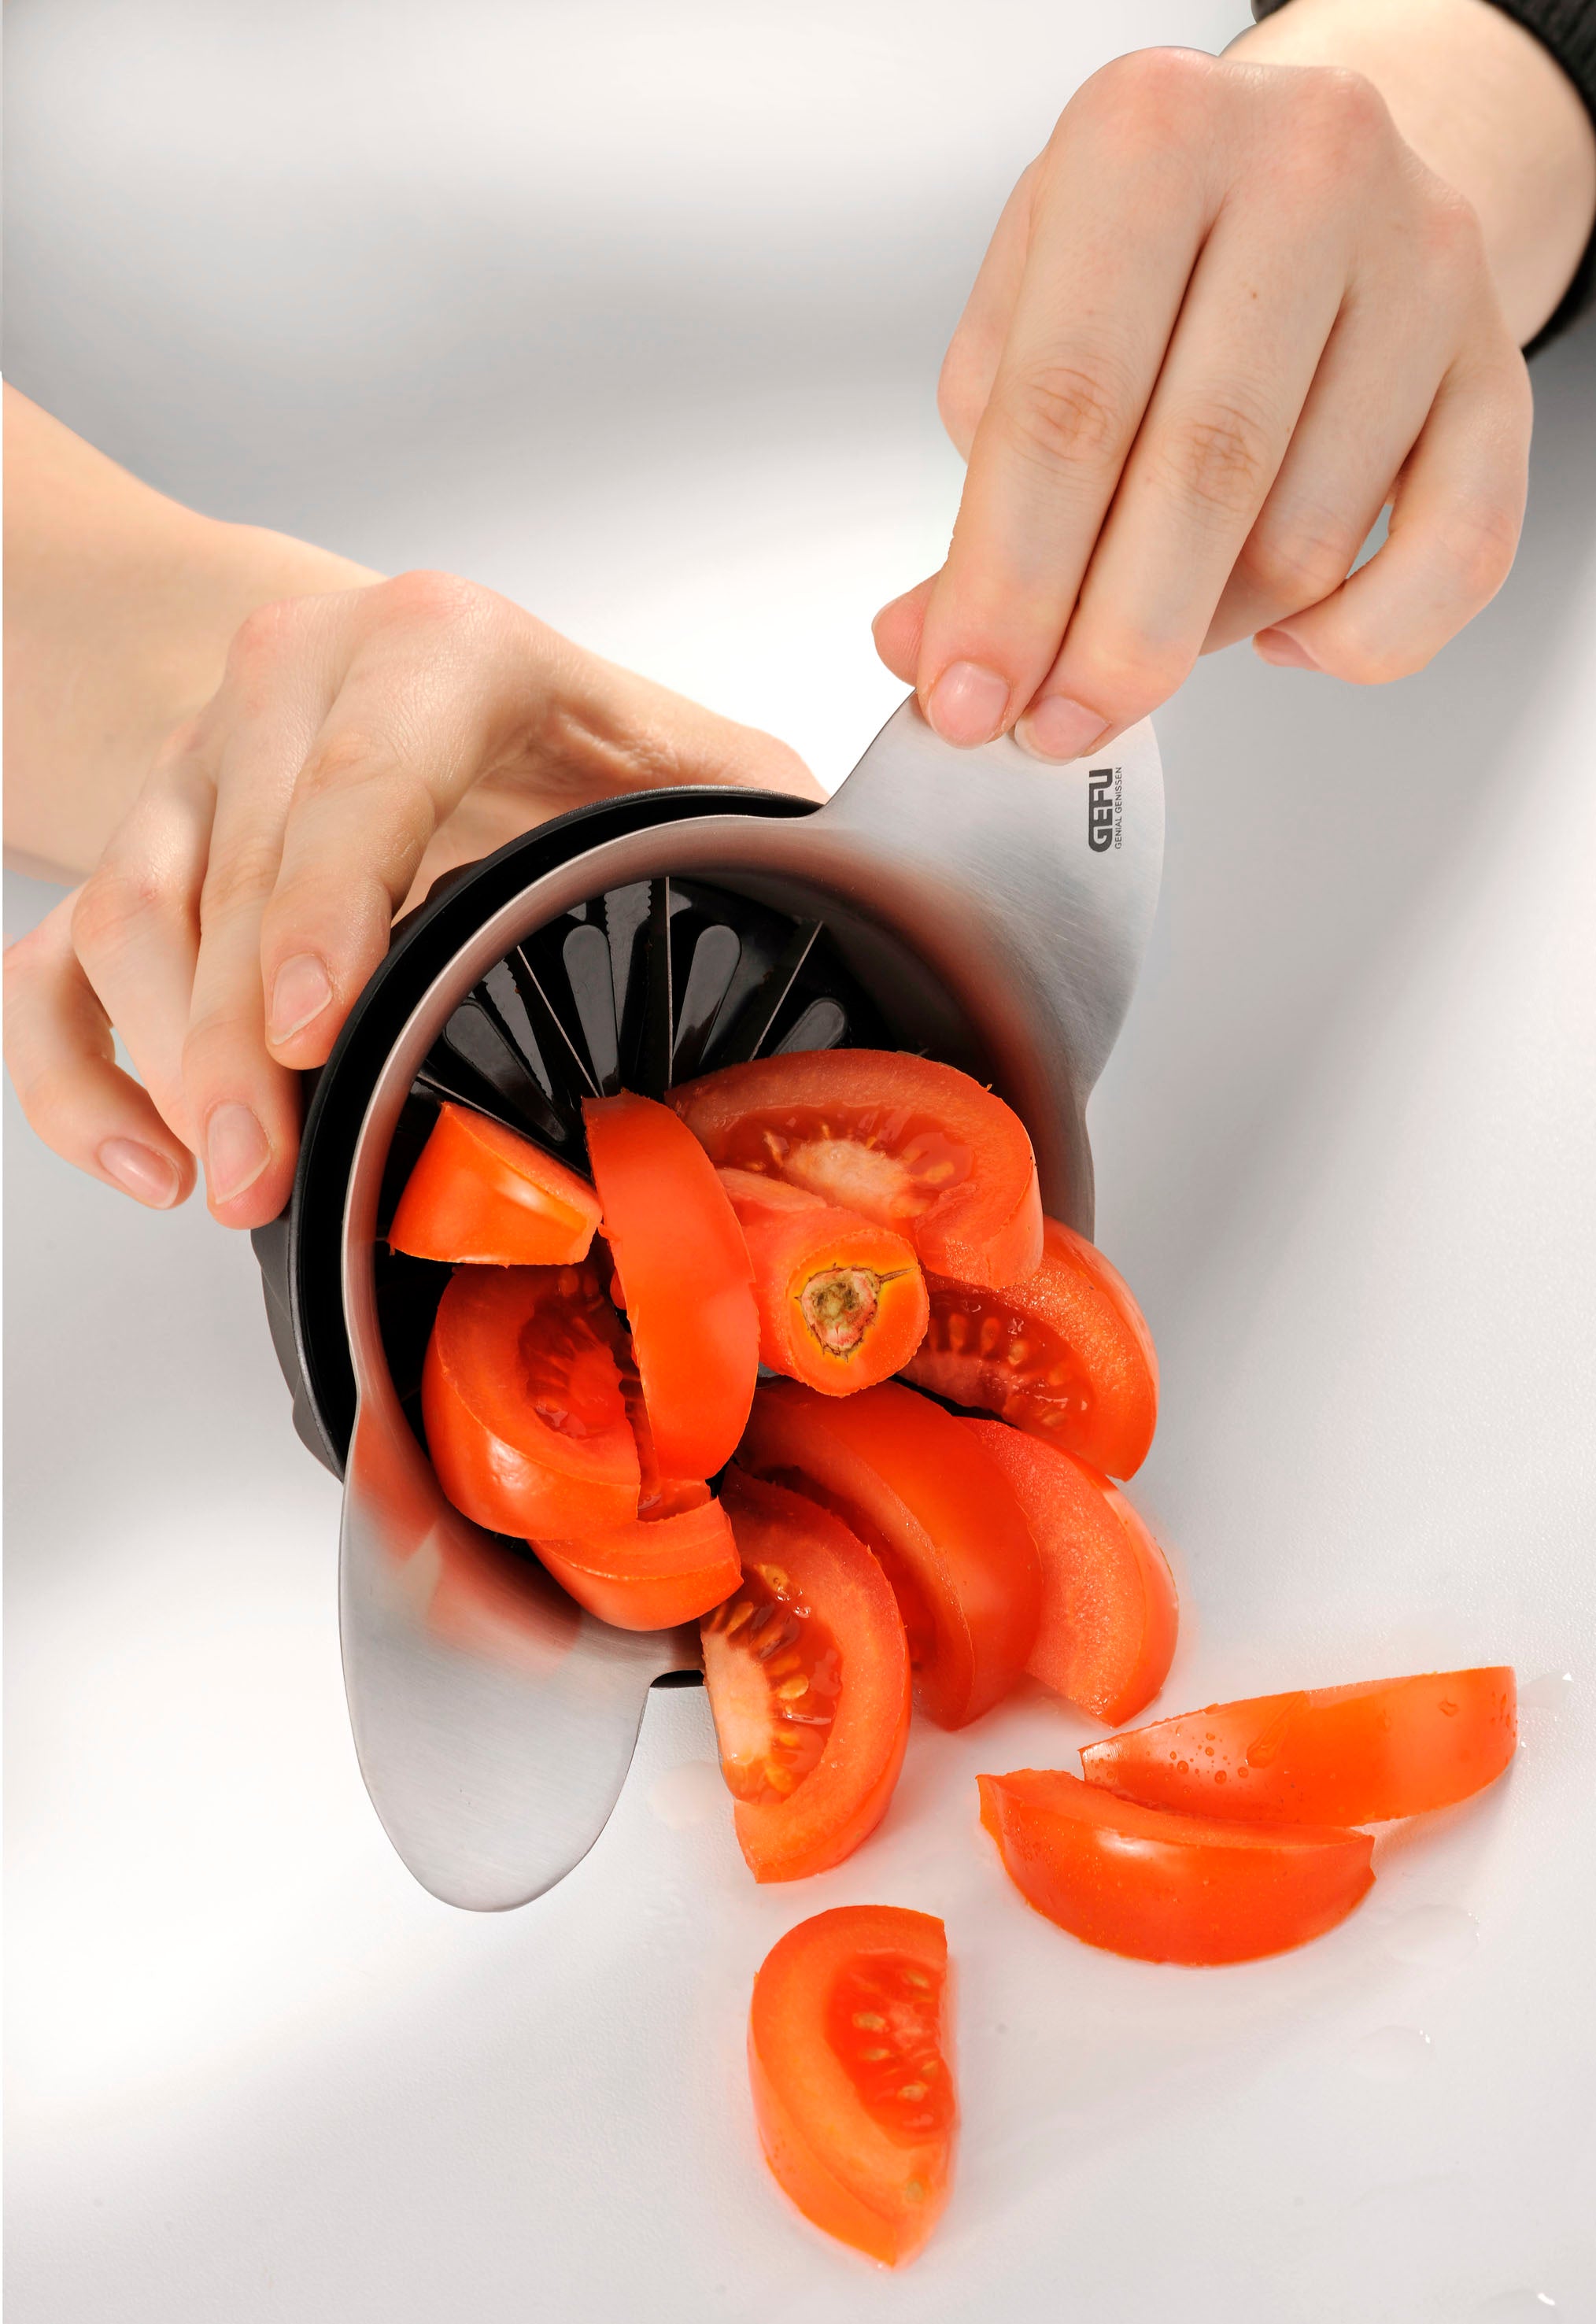 Apple/Tomato Slicer/Corer